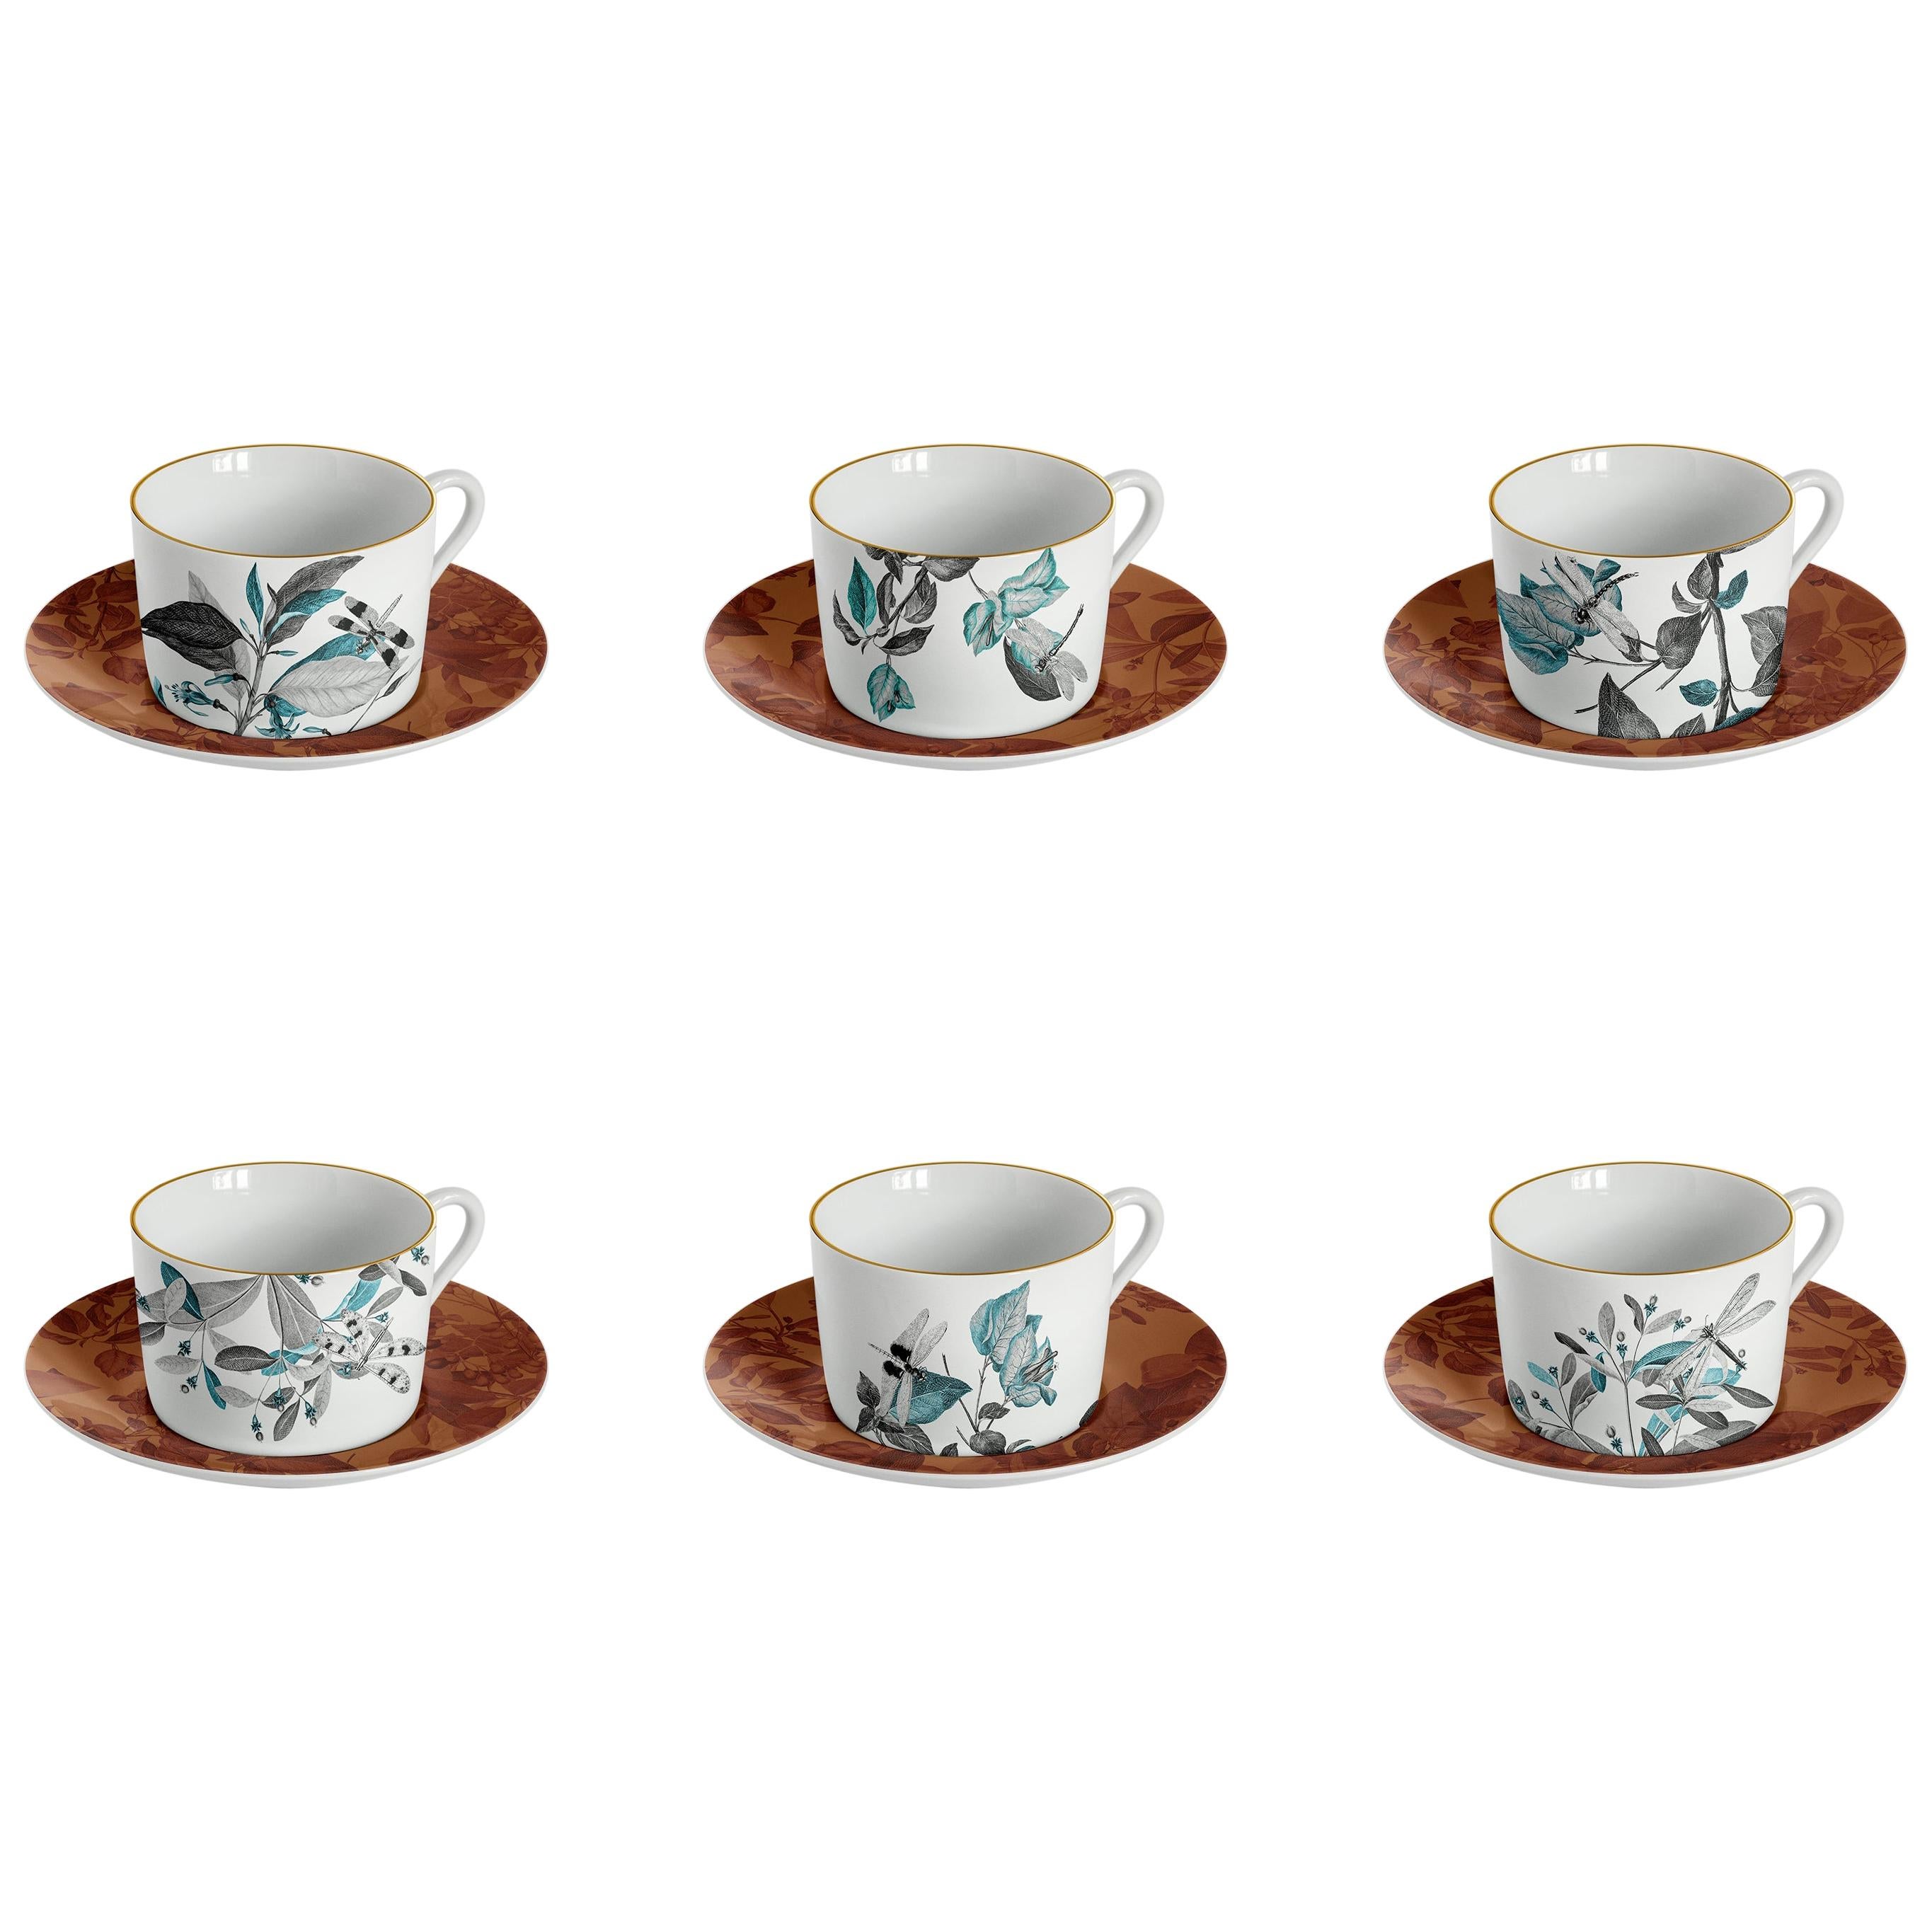 Schwarzer Drache, Teeservice mit sechs zeitgenössischen Porzellanstücken mit dekorativem Design